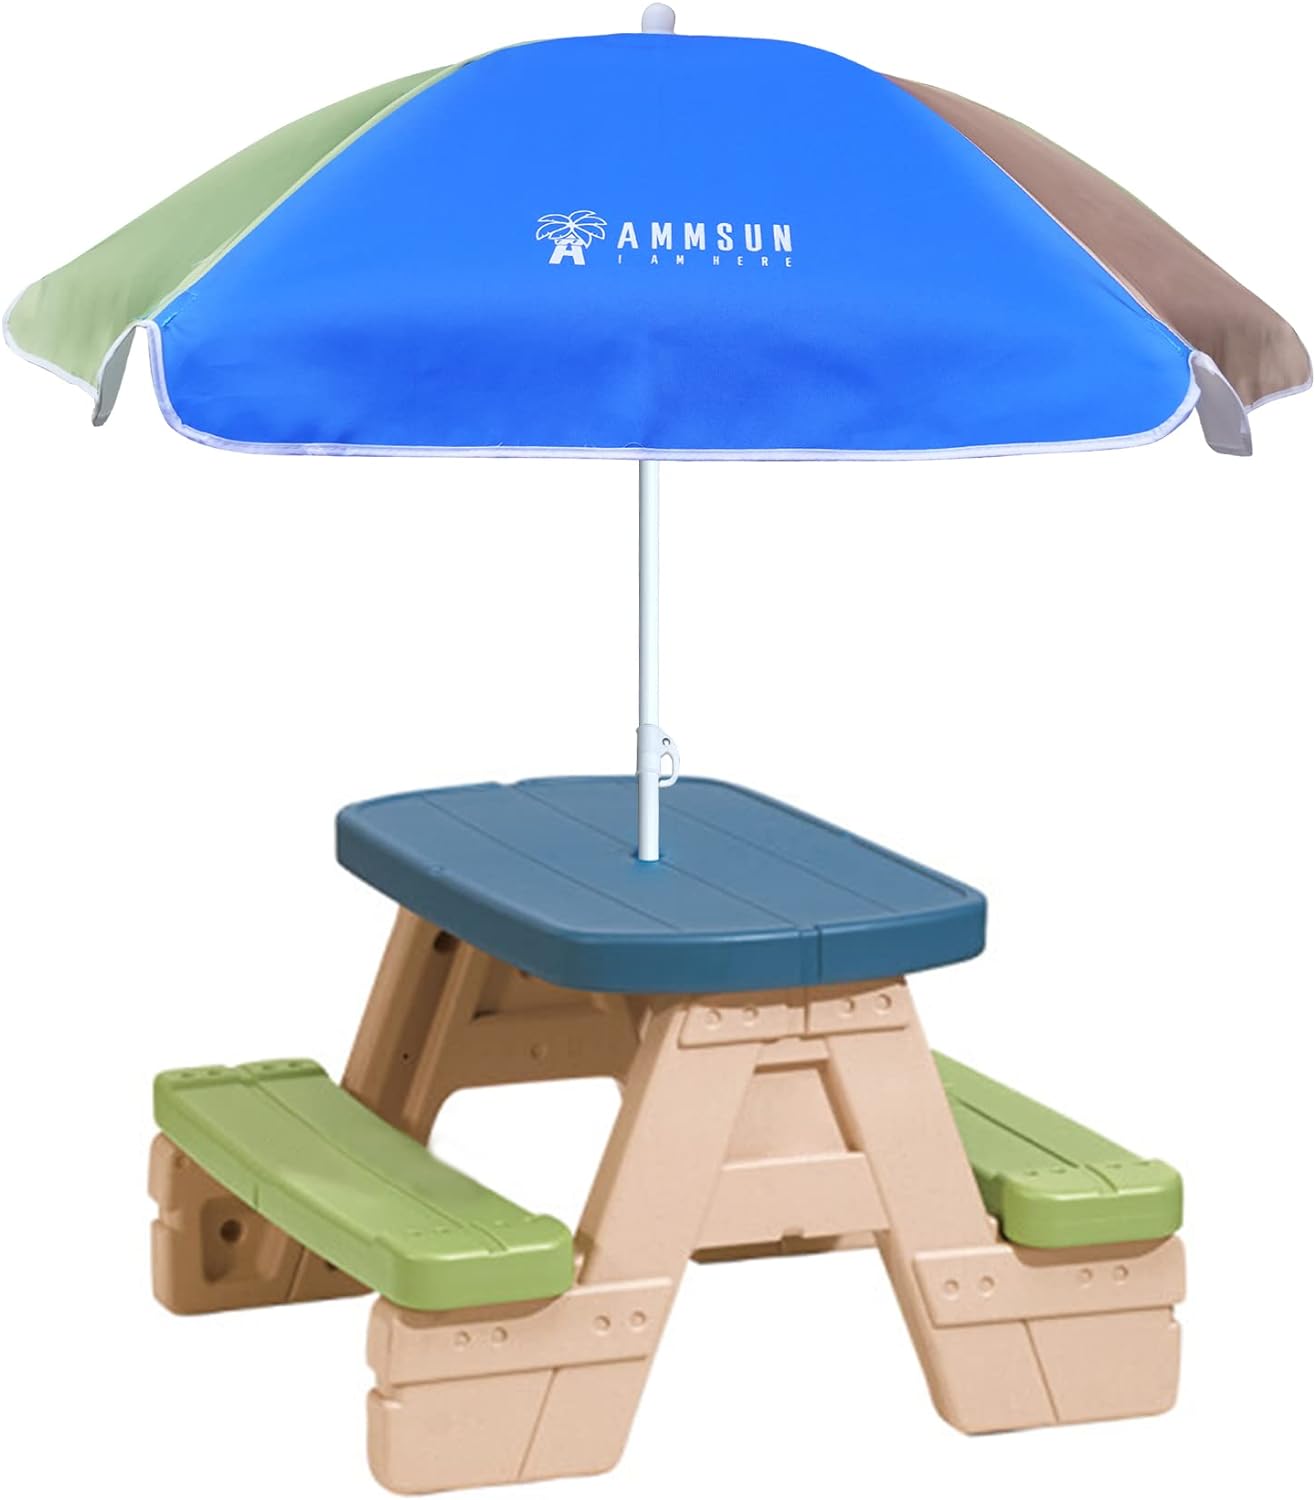 AMMSUN 5ft Beach Camping Garden Outdoor Kid Umbrella Green Blue